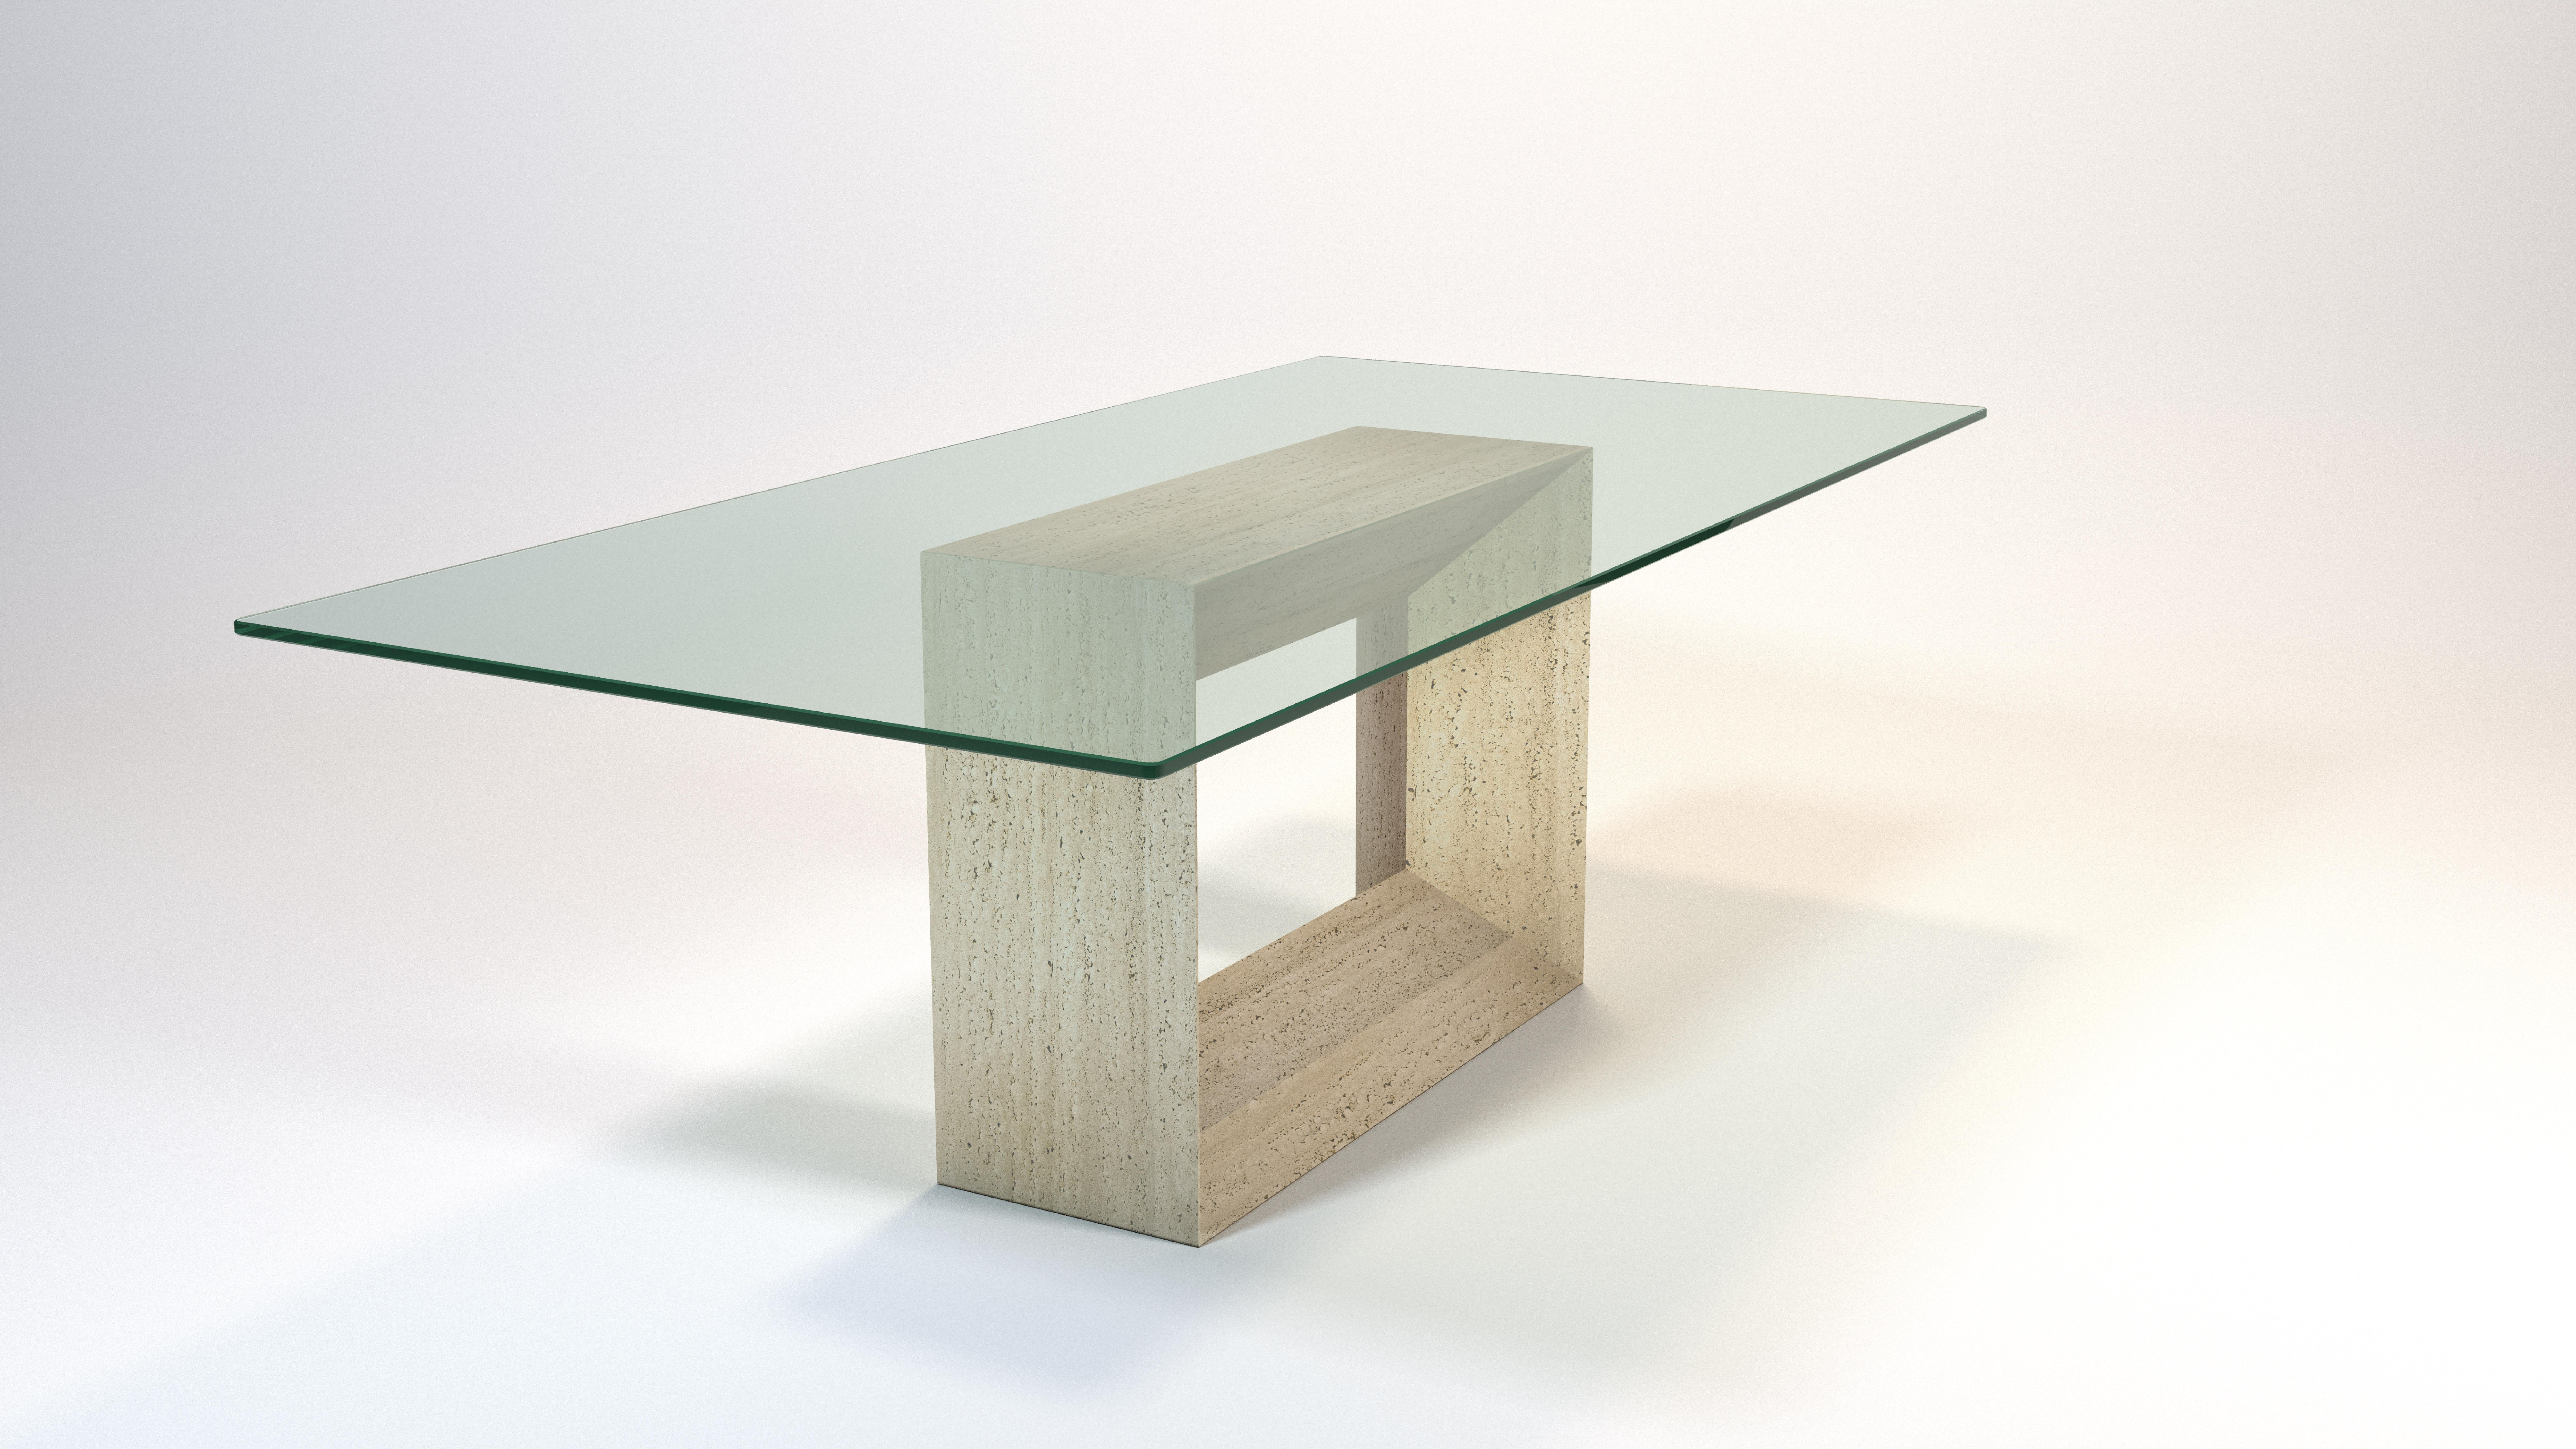 MYA Table de salle à manger en marbre travertin Design/One contemporain Joaquín Moll Meddel Spain est une table de salle à manger design fabriquée en Espagne.
La table de salle à manger en marbre travertin ROOMS est un choix parfait pour moderniser